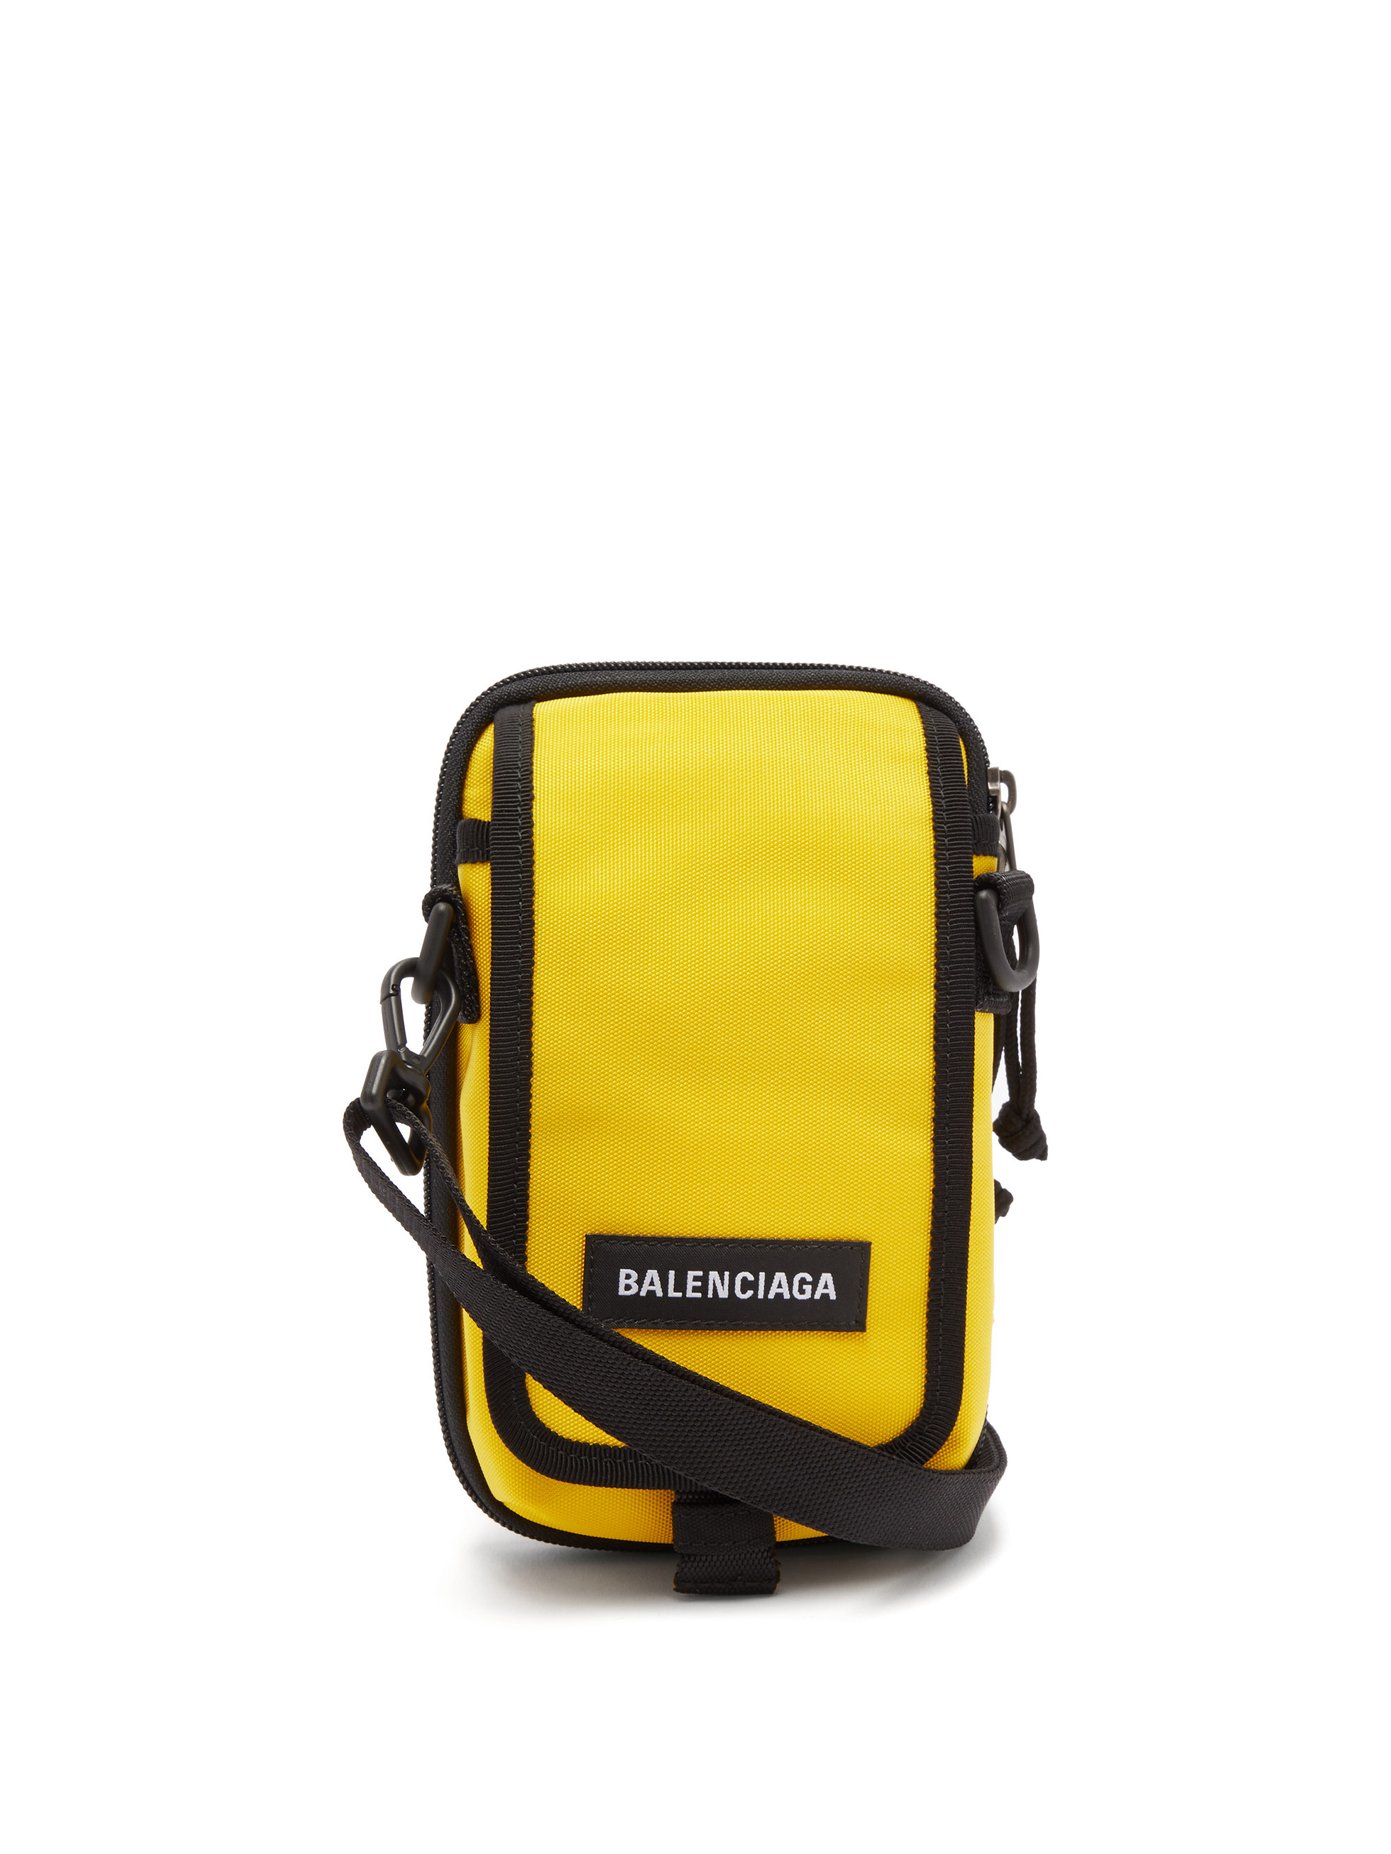 balenciaga yellow purse